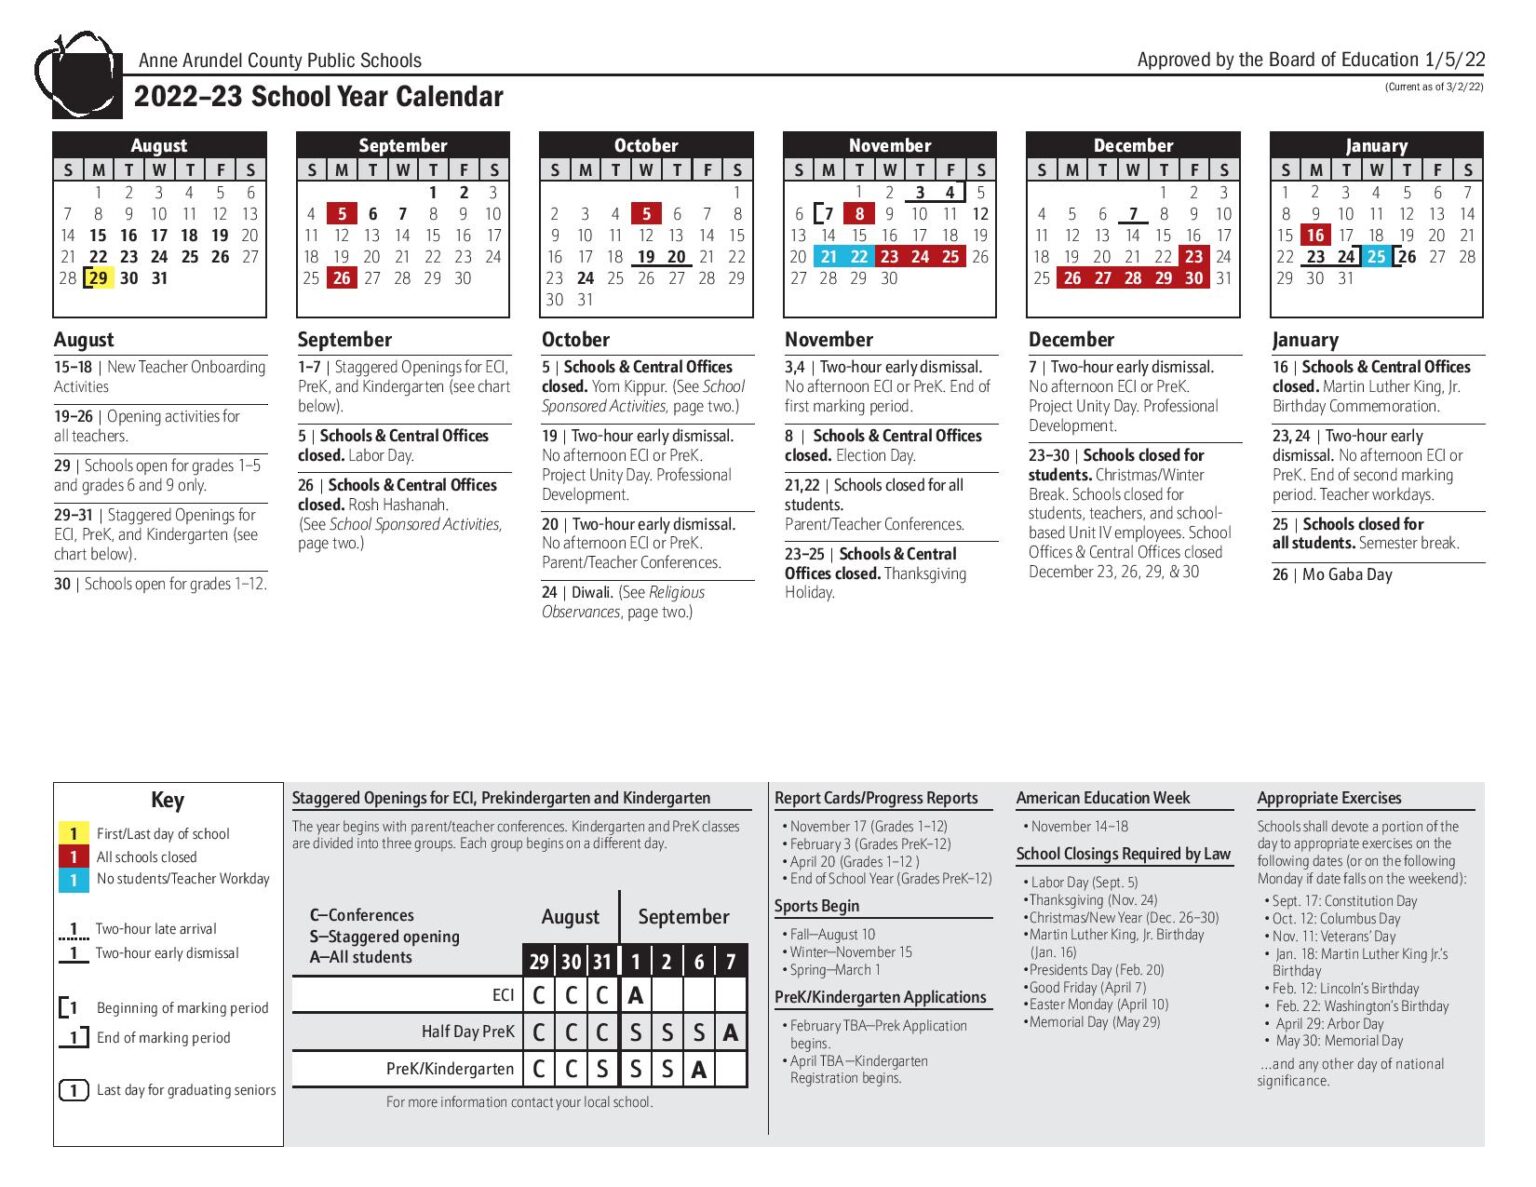 Anne Arundel County Public Schools Calendar 20222023 PDF